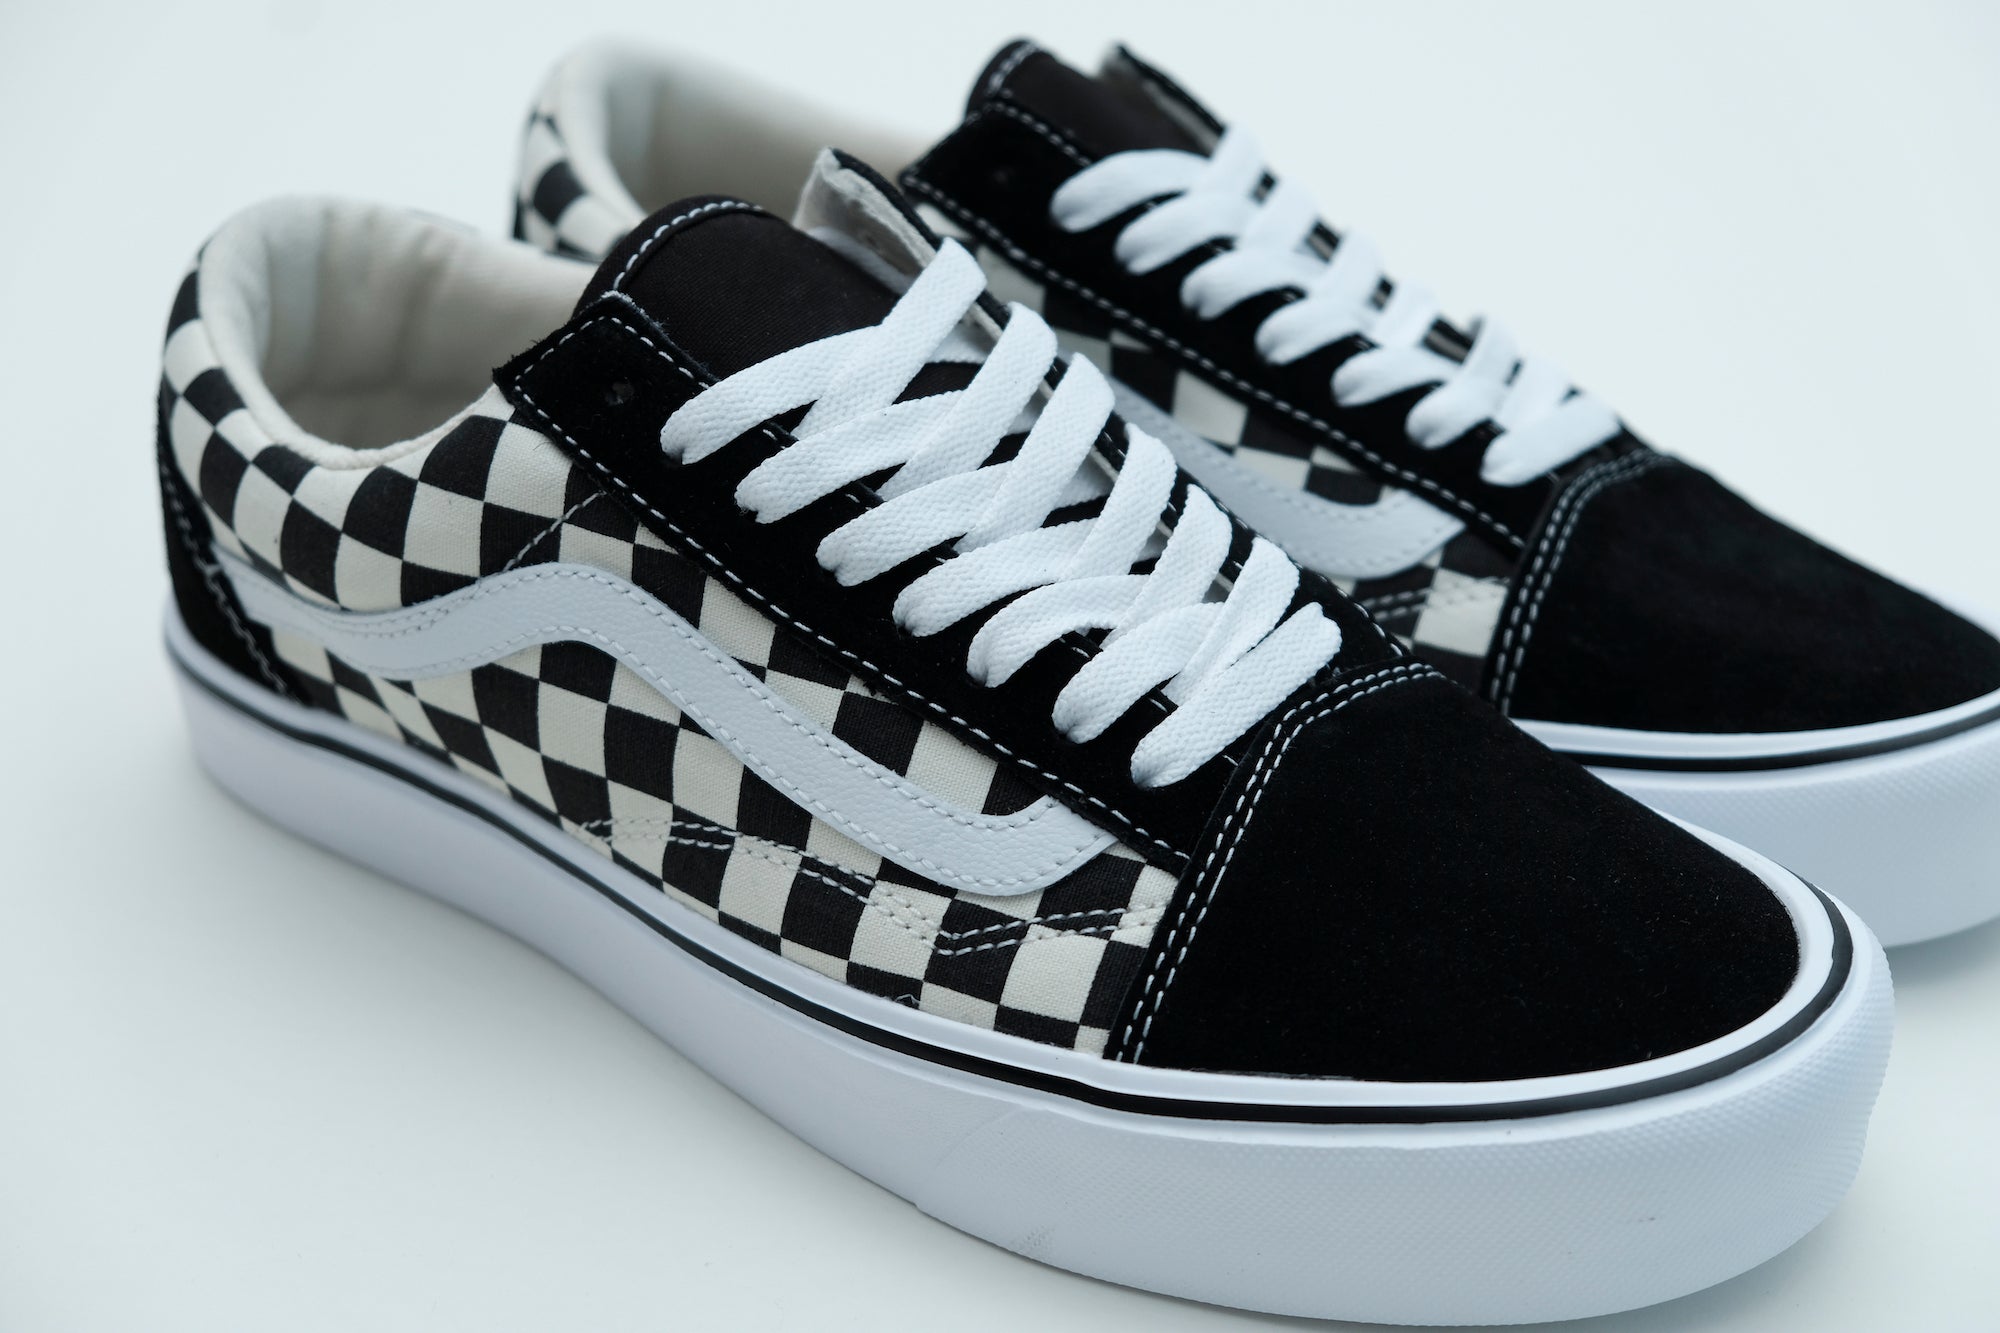 Vans Old Skool checkerboard sneakers in black